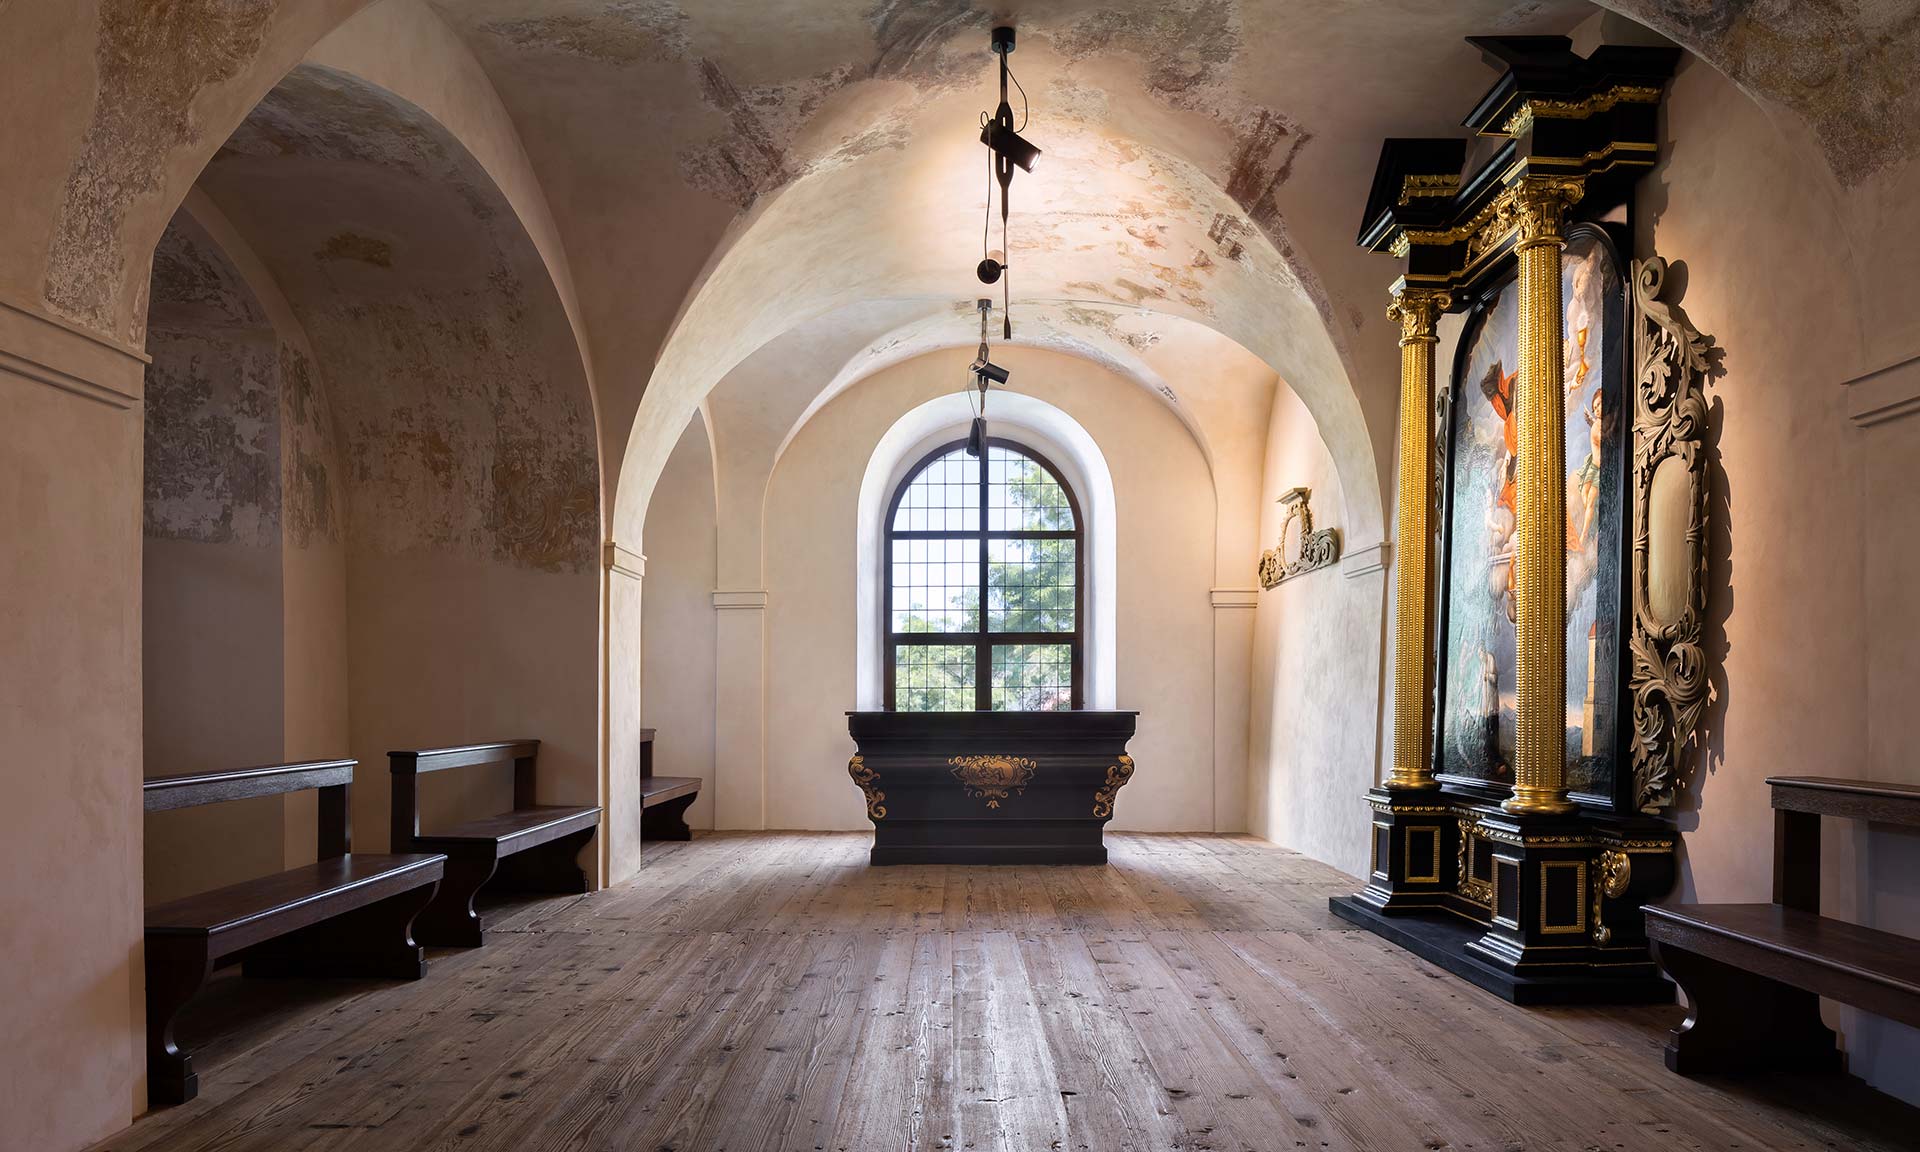 Sázavský klášter získal po velké obnově původní krásu a zpřístupnil nová místa